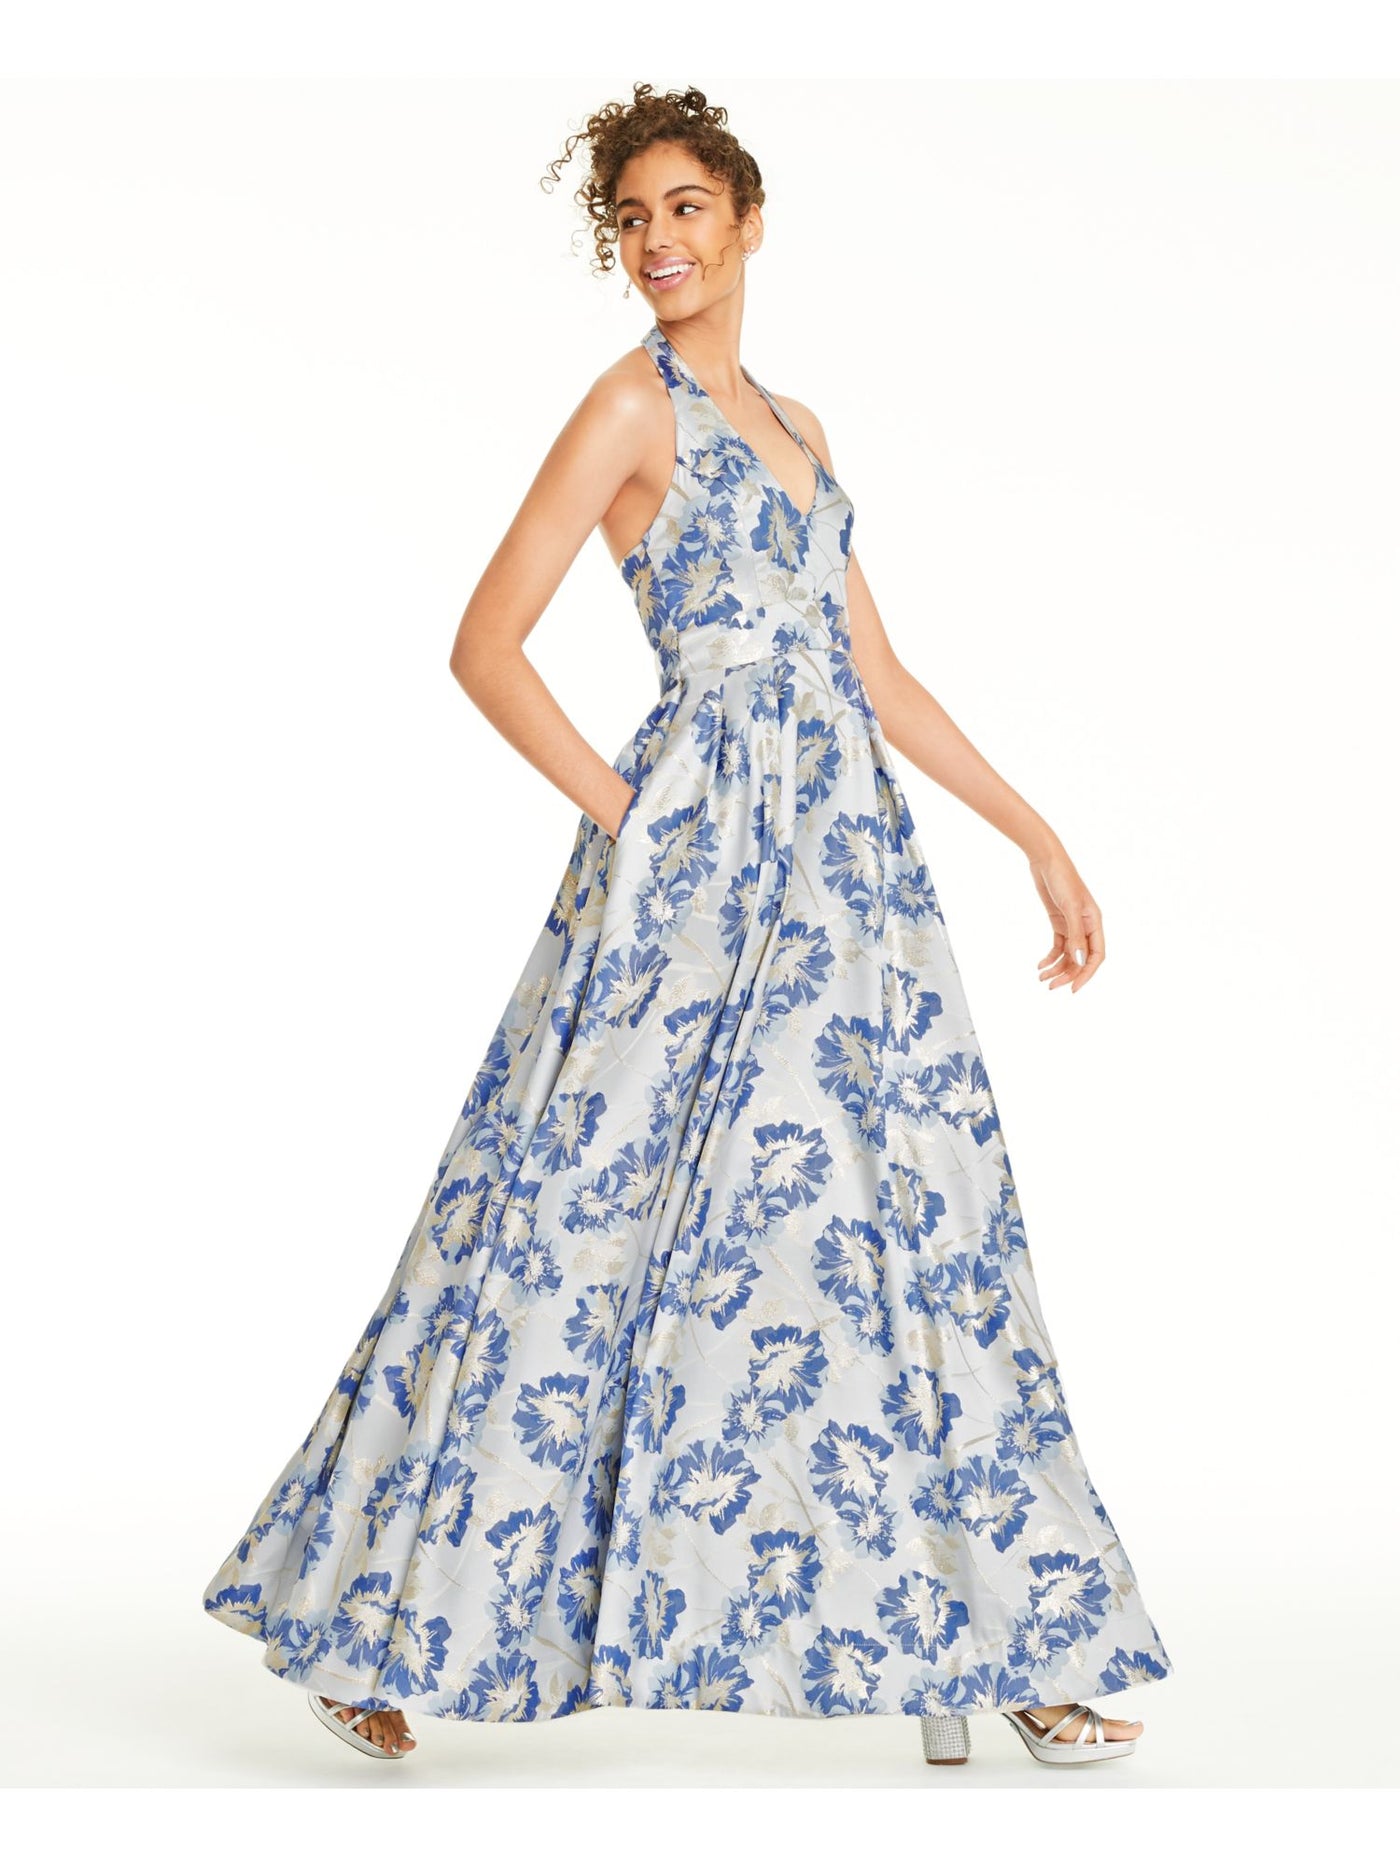 SPEECHLESS Womens Blue Floral Sleeveless V Neck Full-Length Formal Fit + Flare Dress Juniors 0